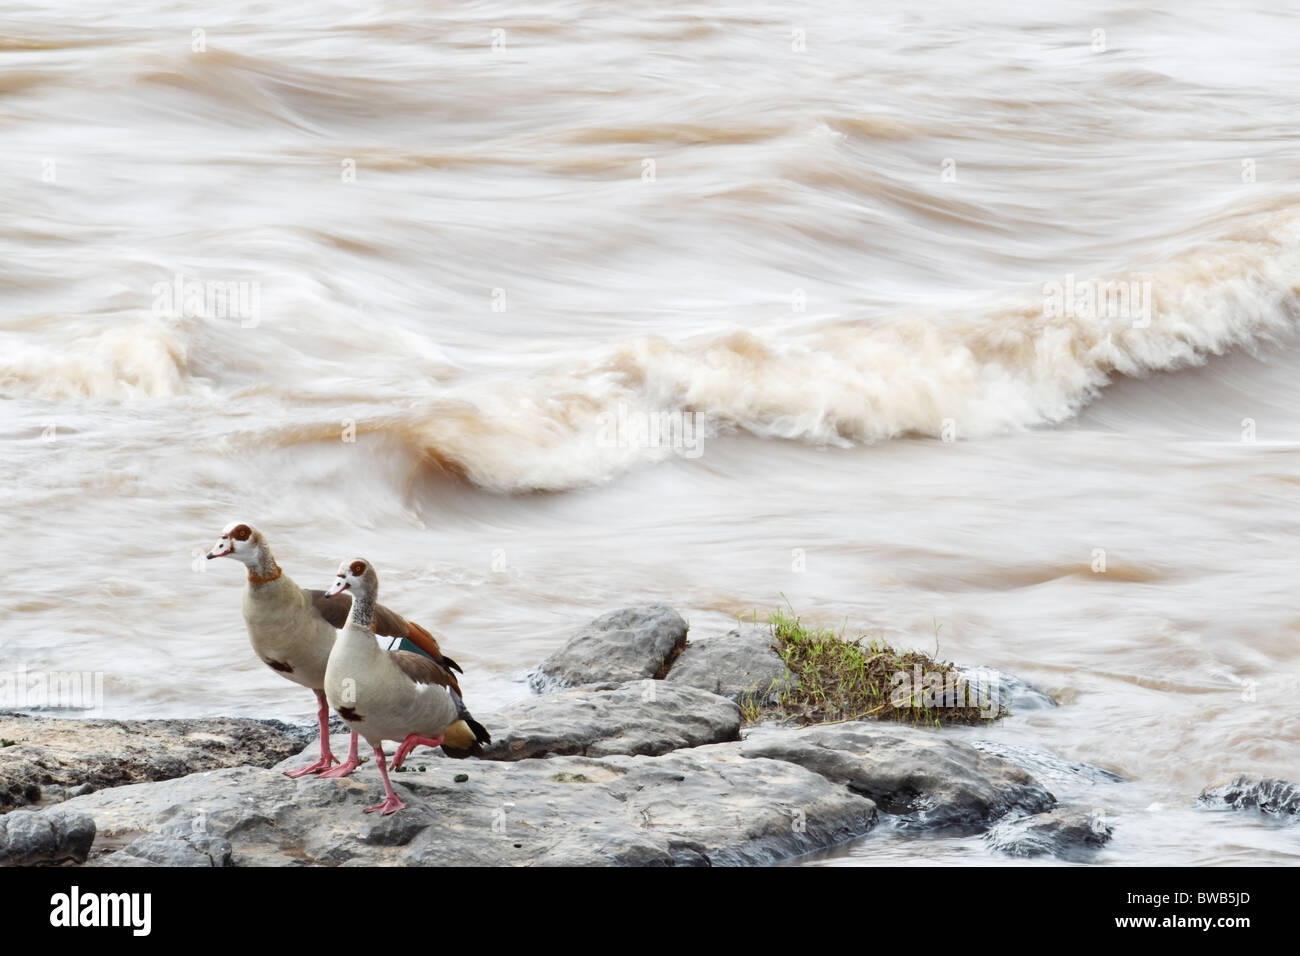 Egyptian geese at the Mara river, Kenya. Stock Photo